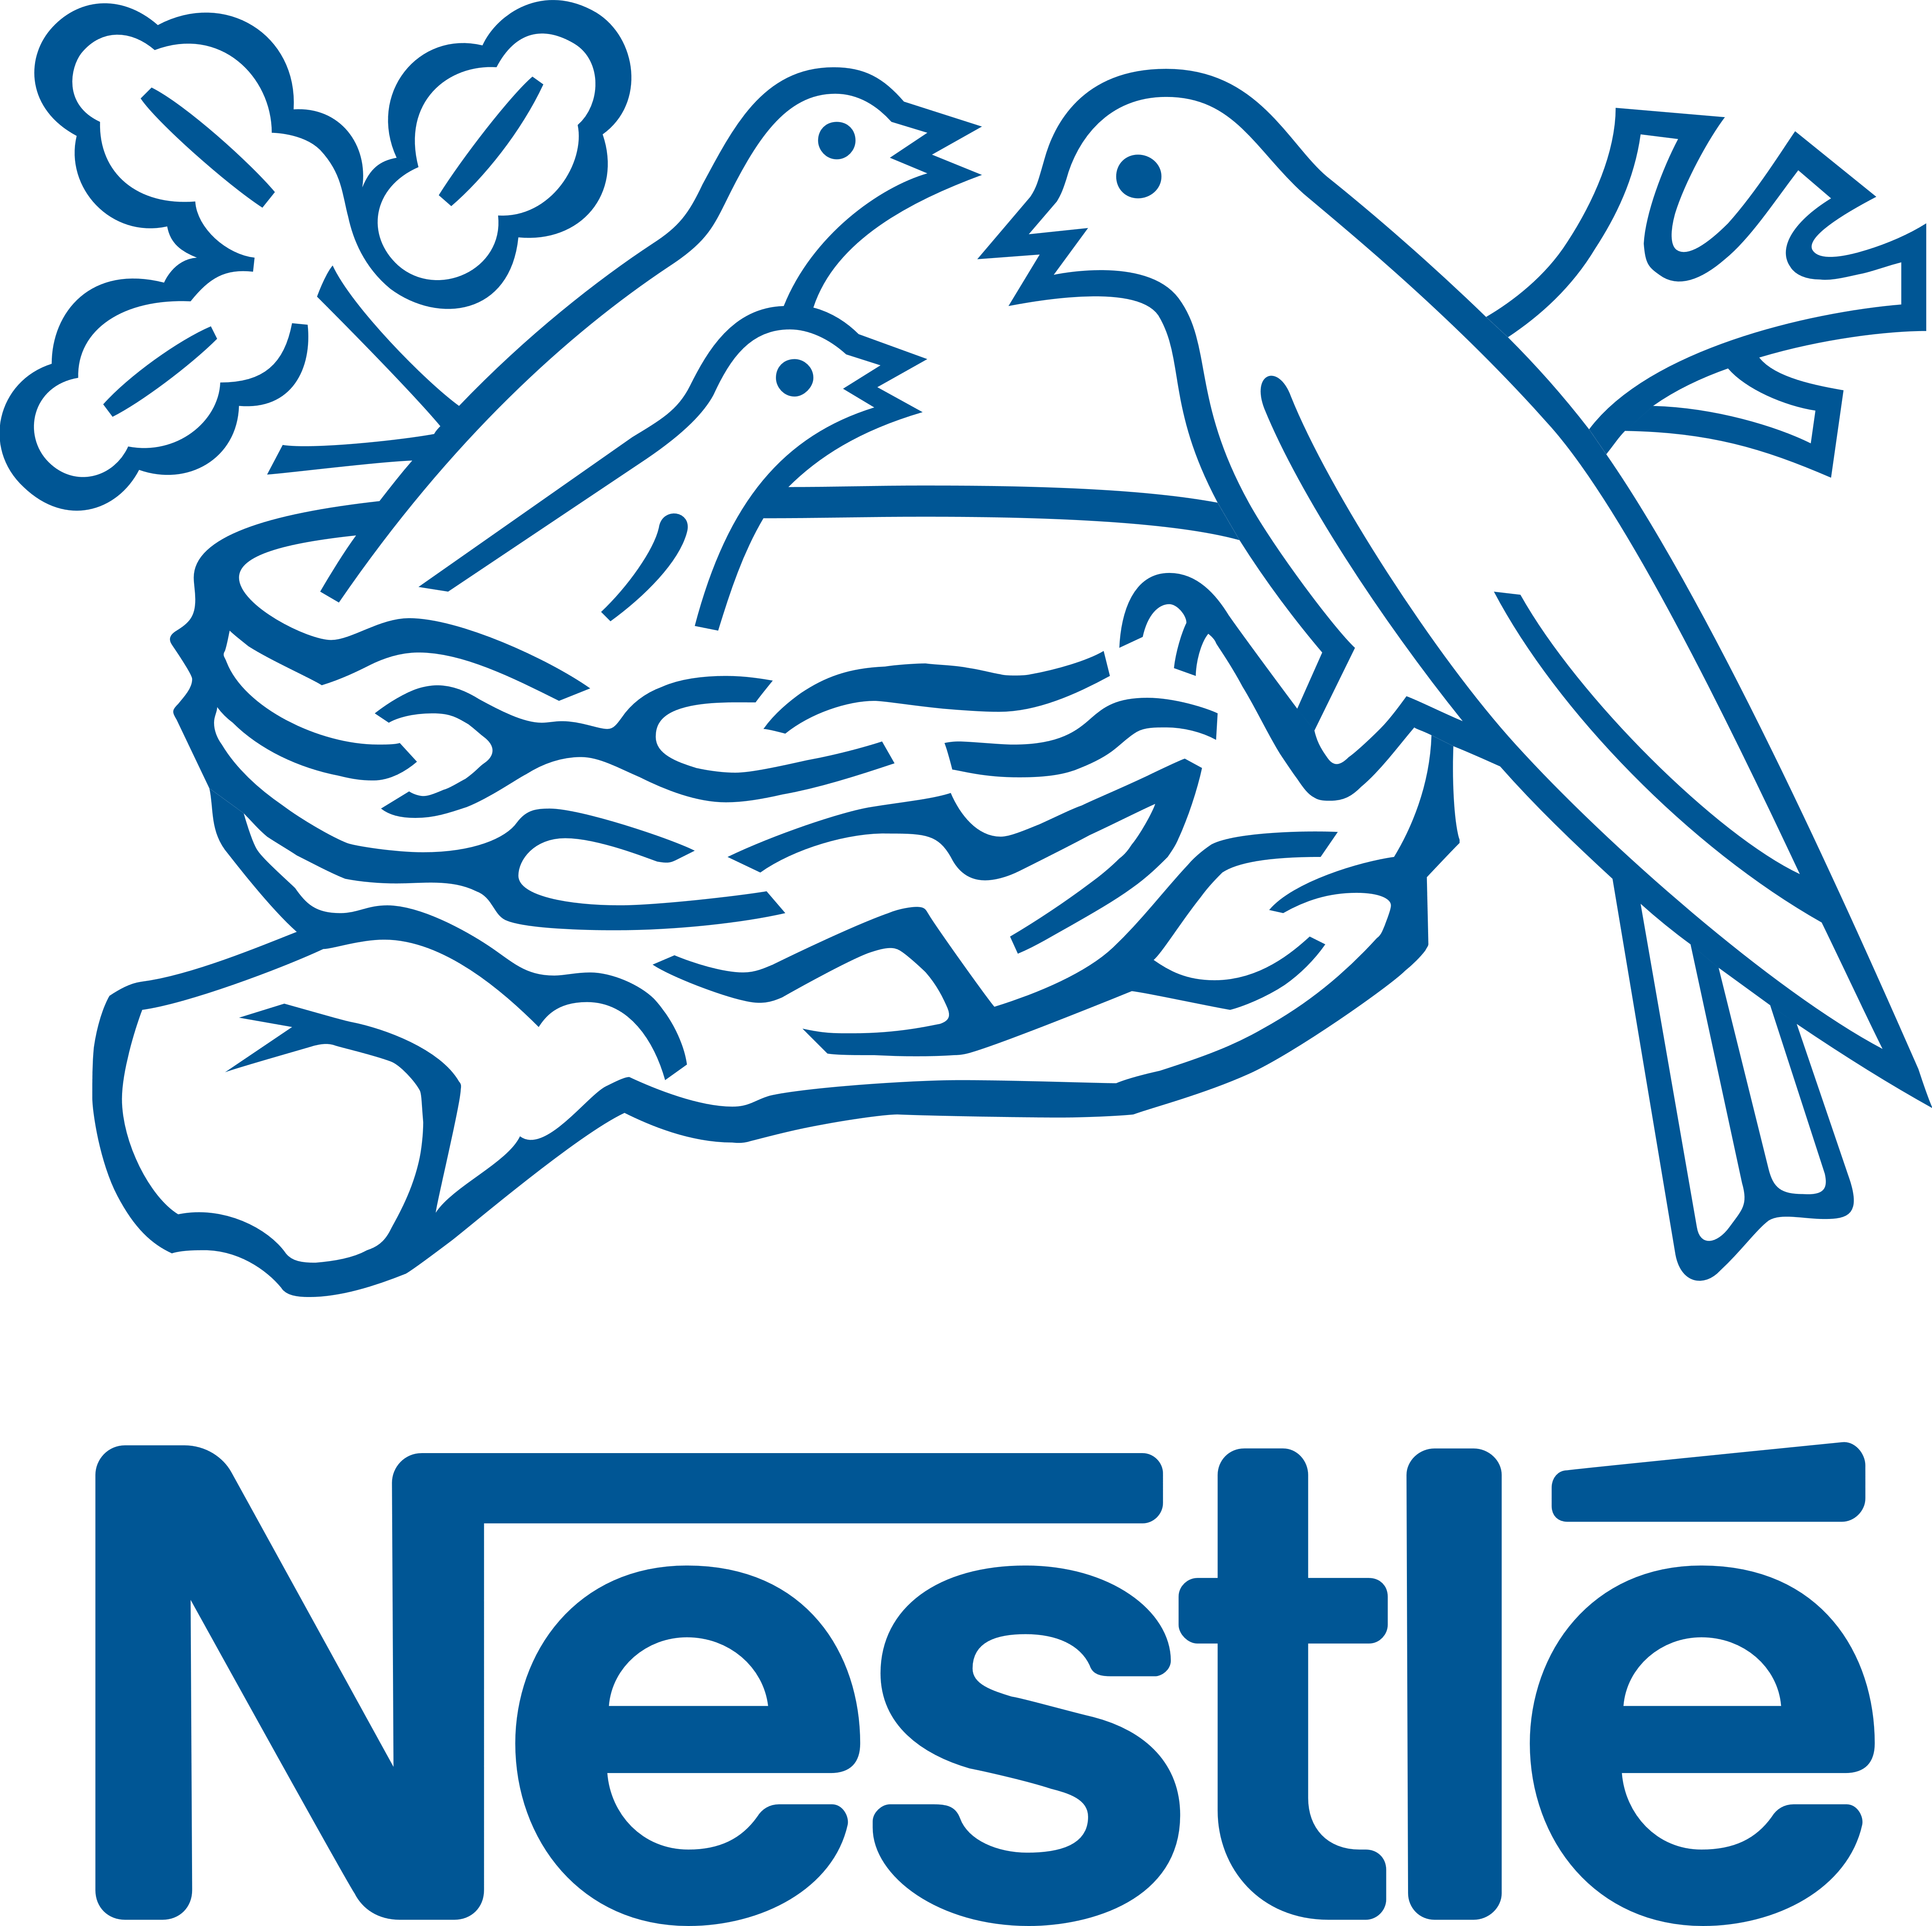 Nestle Logo Png Download - 90